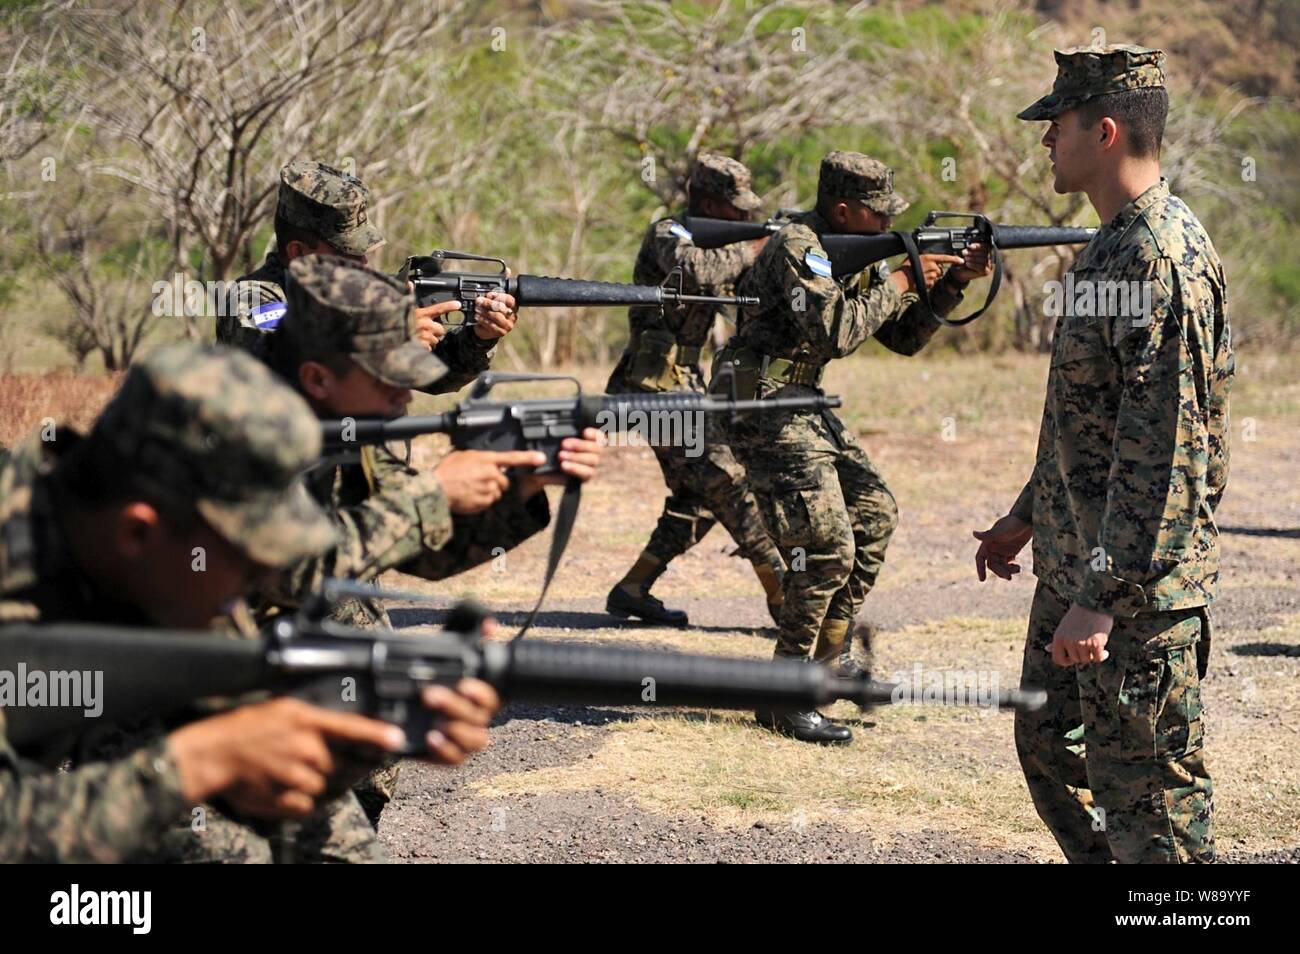 Le sergent du Corps des Marines des États-Unis. Daniel Monteiro (droite), affecté à la formation du Corps des Marines et du Groupe consultatif, enseigne les techniques de mouvement tactique appropriée à un groupe de soldats affectés au 11e bataillon de l'armée hondurienne pendant une semaine d'échange d'experts en la matière à l'appui de Partenariat Sud Station 2011 à San Lorenzo, le Honduras, le 15 mars 2011. Partenariat sud Station est un déploiement annuel de navires américains au sud de la zone de responsabilité du commandement dans les Caraïbes et en Amérique latine. L'exercice implique le partage d'information avec des marines, garde-côtes et civils s Banque D'Images